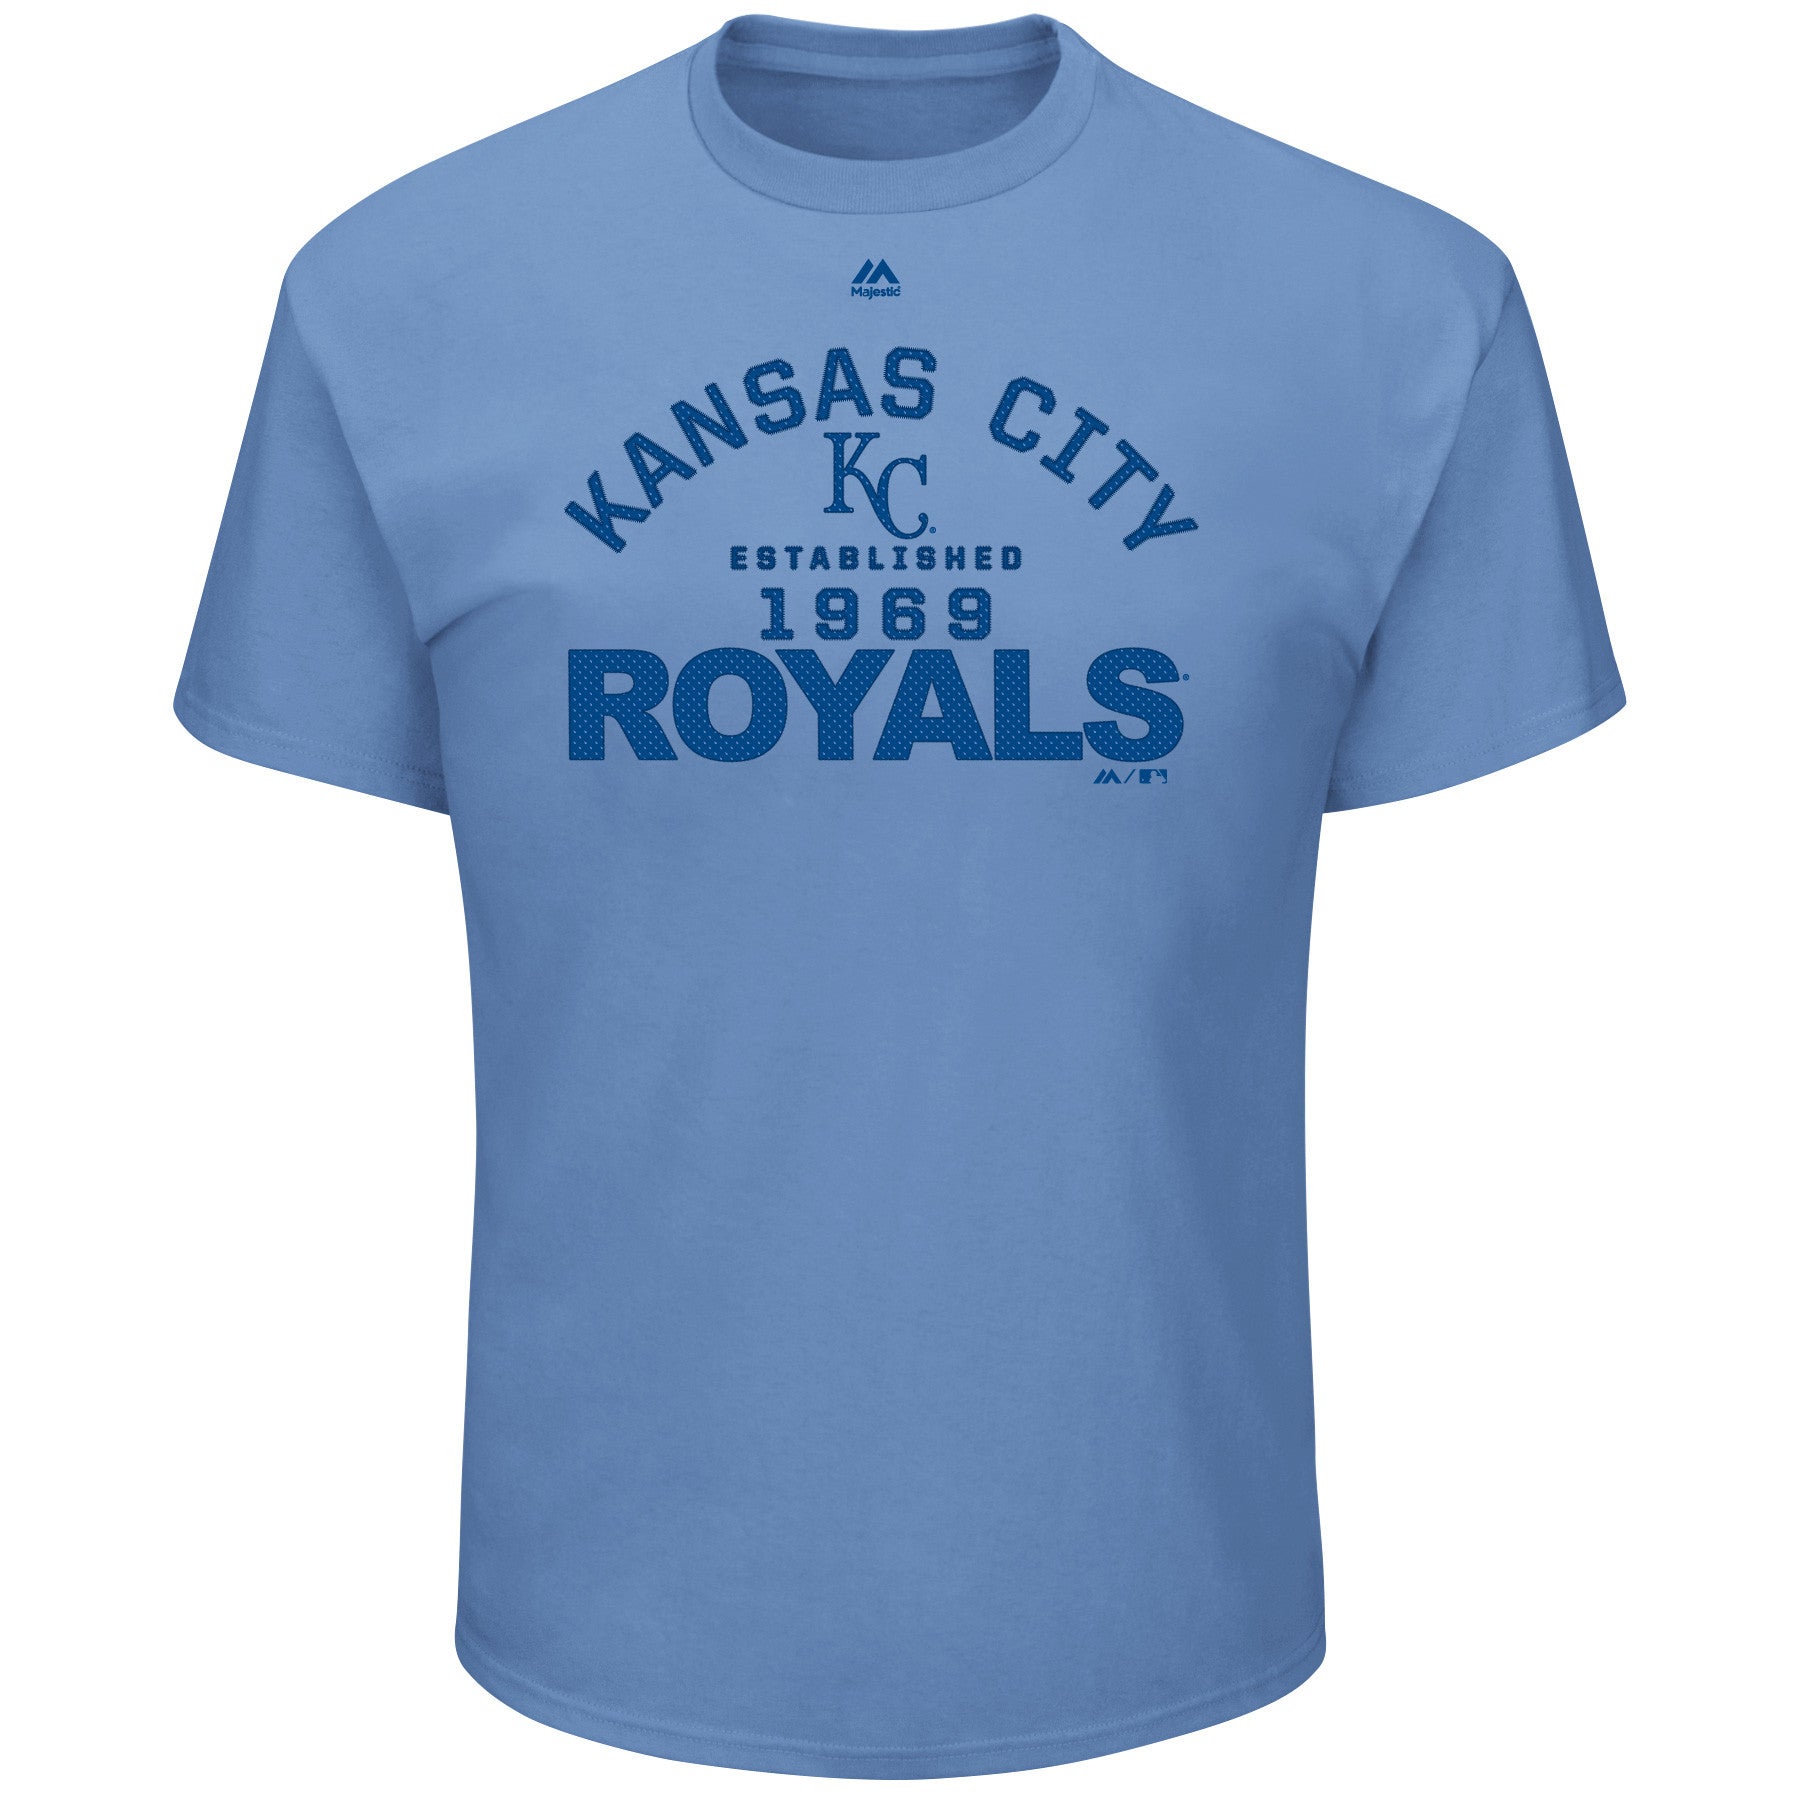 Majestic Athletic Men's T-Shirt - Blue - XL